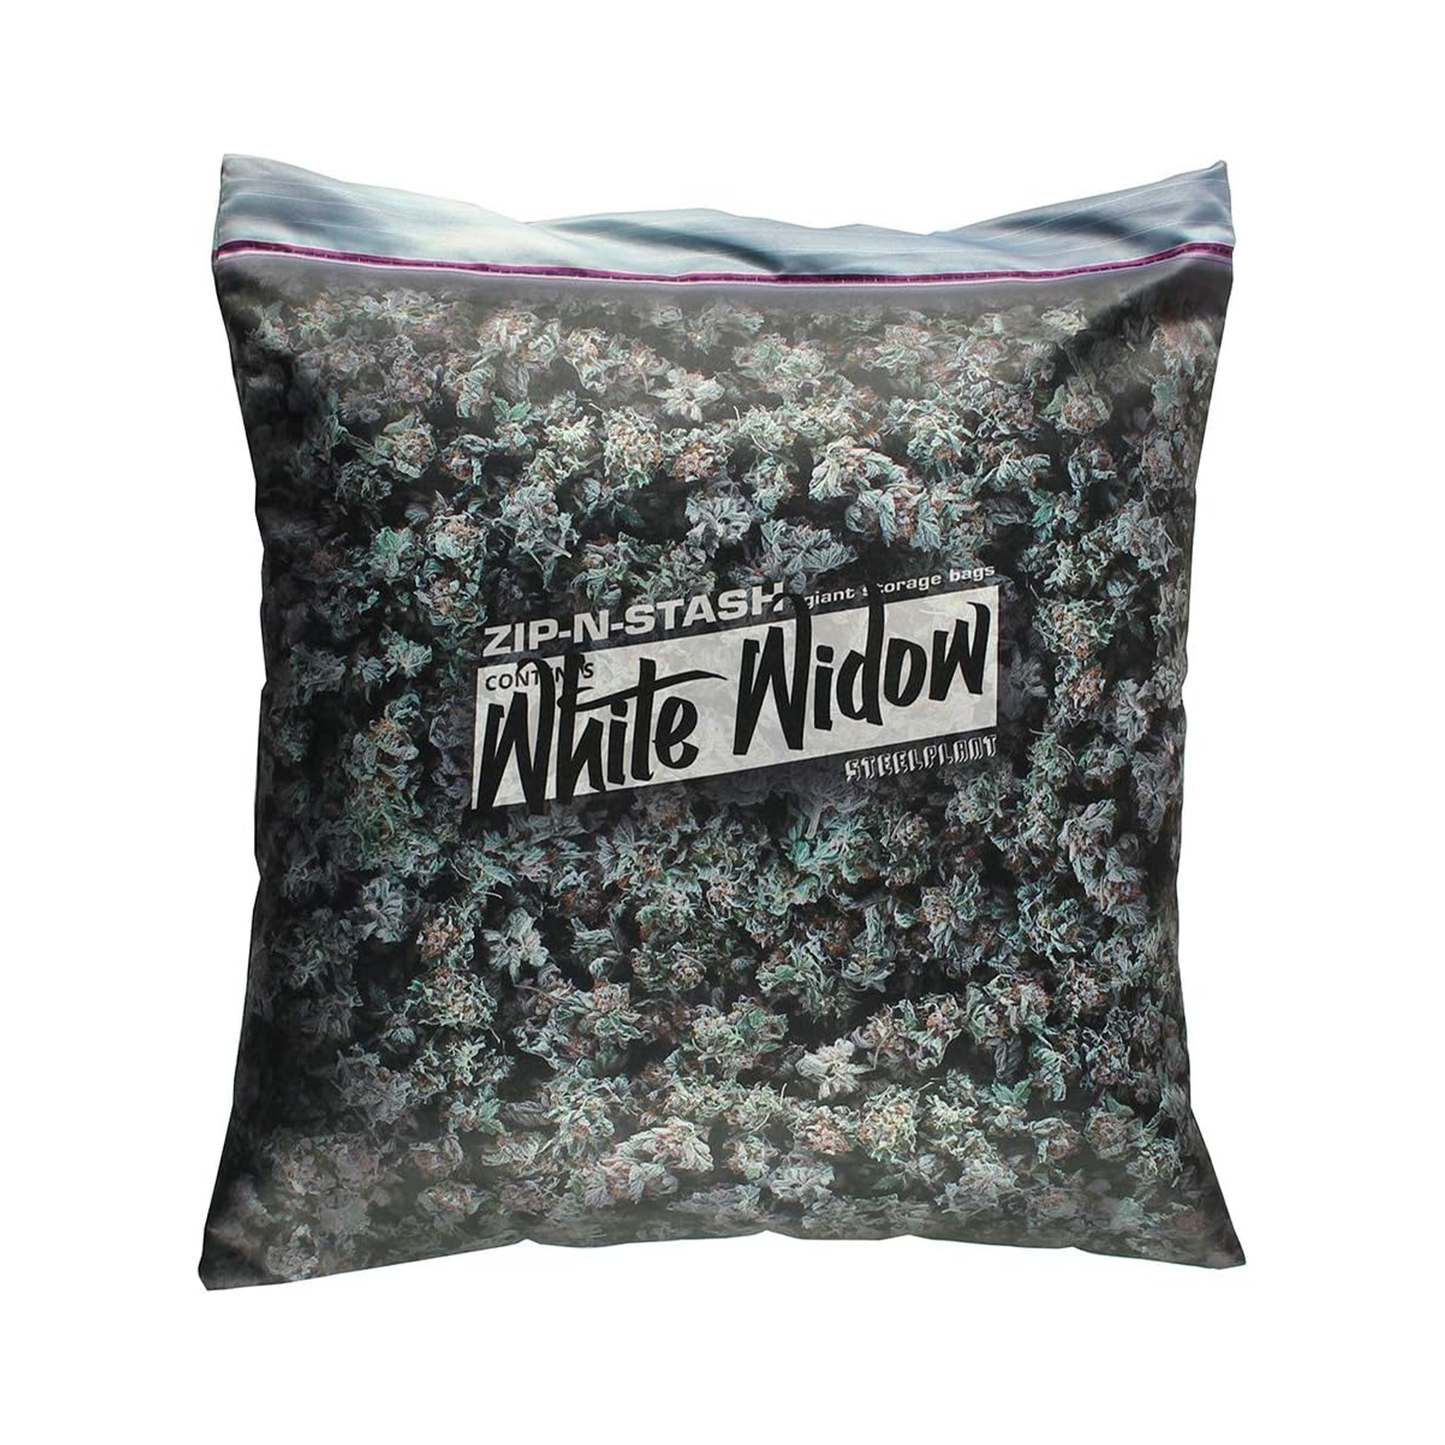 White Widow Giant Stash Weed Pillowcase